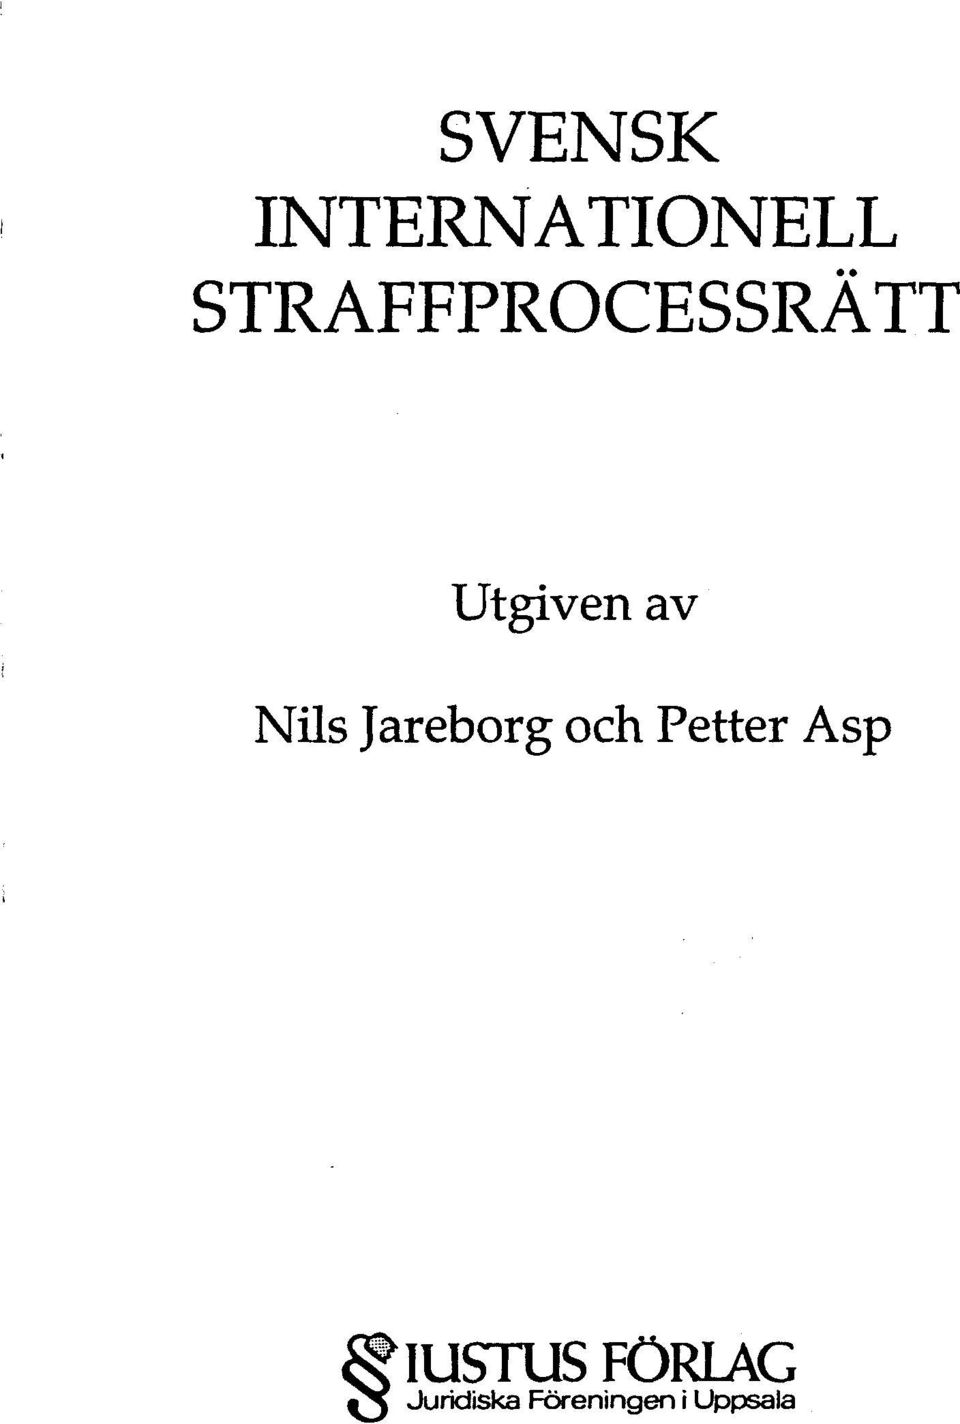 Nils Jareborg och Petter Asp